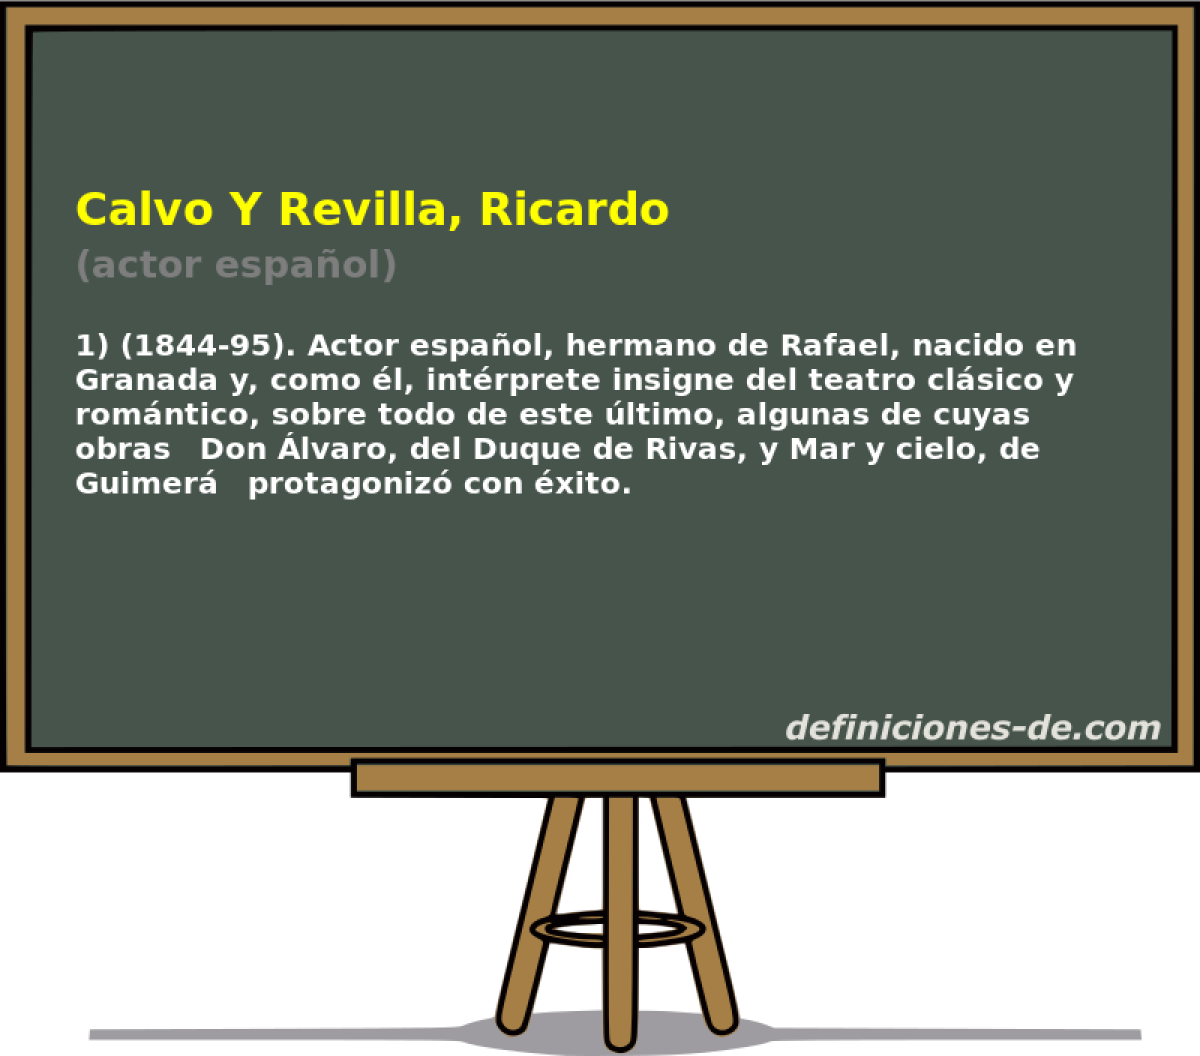 Calvo Y Revilla, Ricardo (actor espaol)